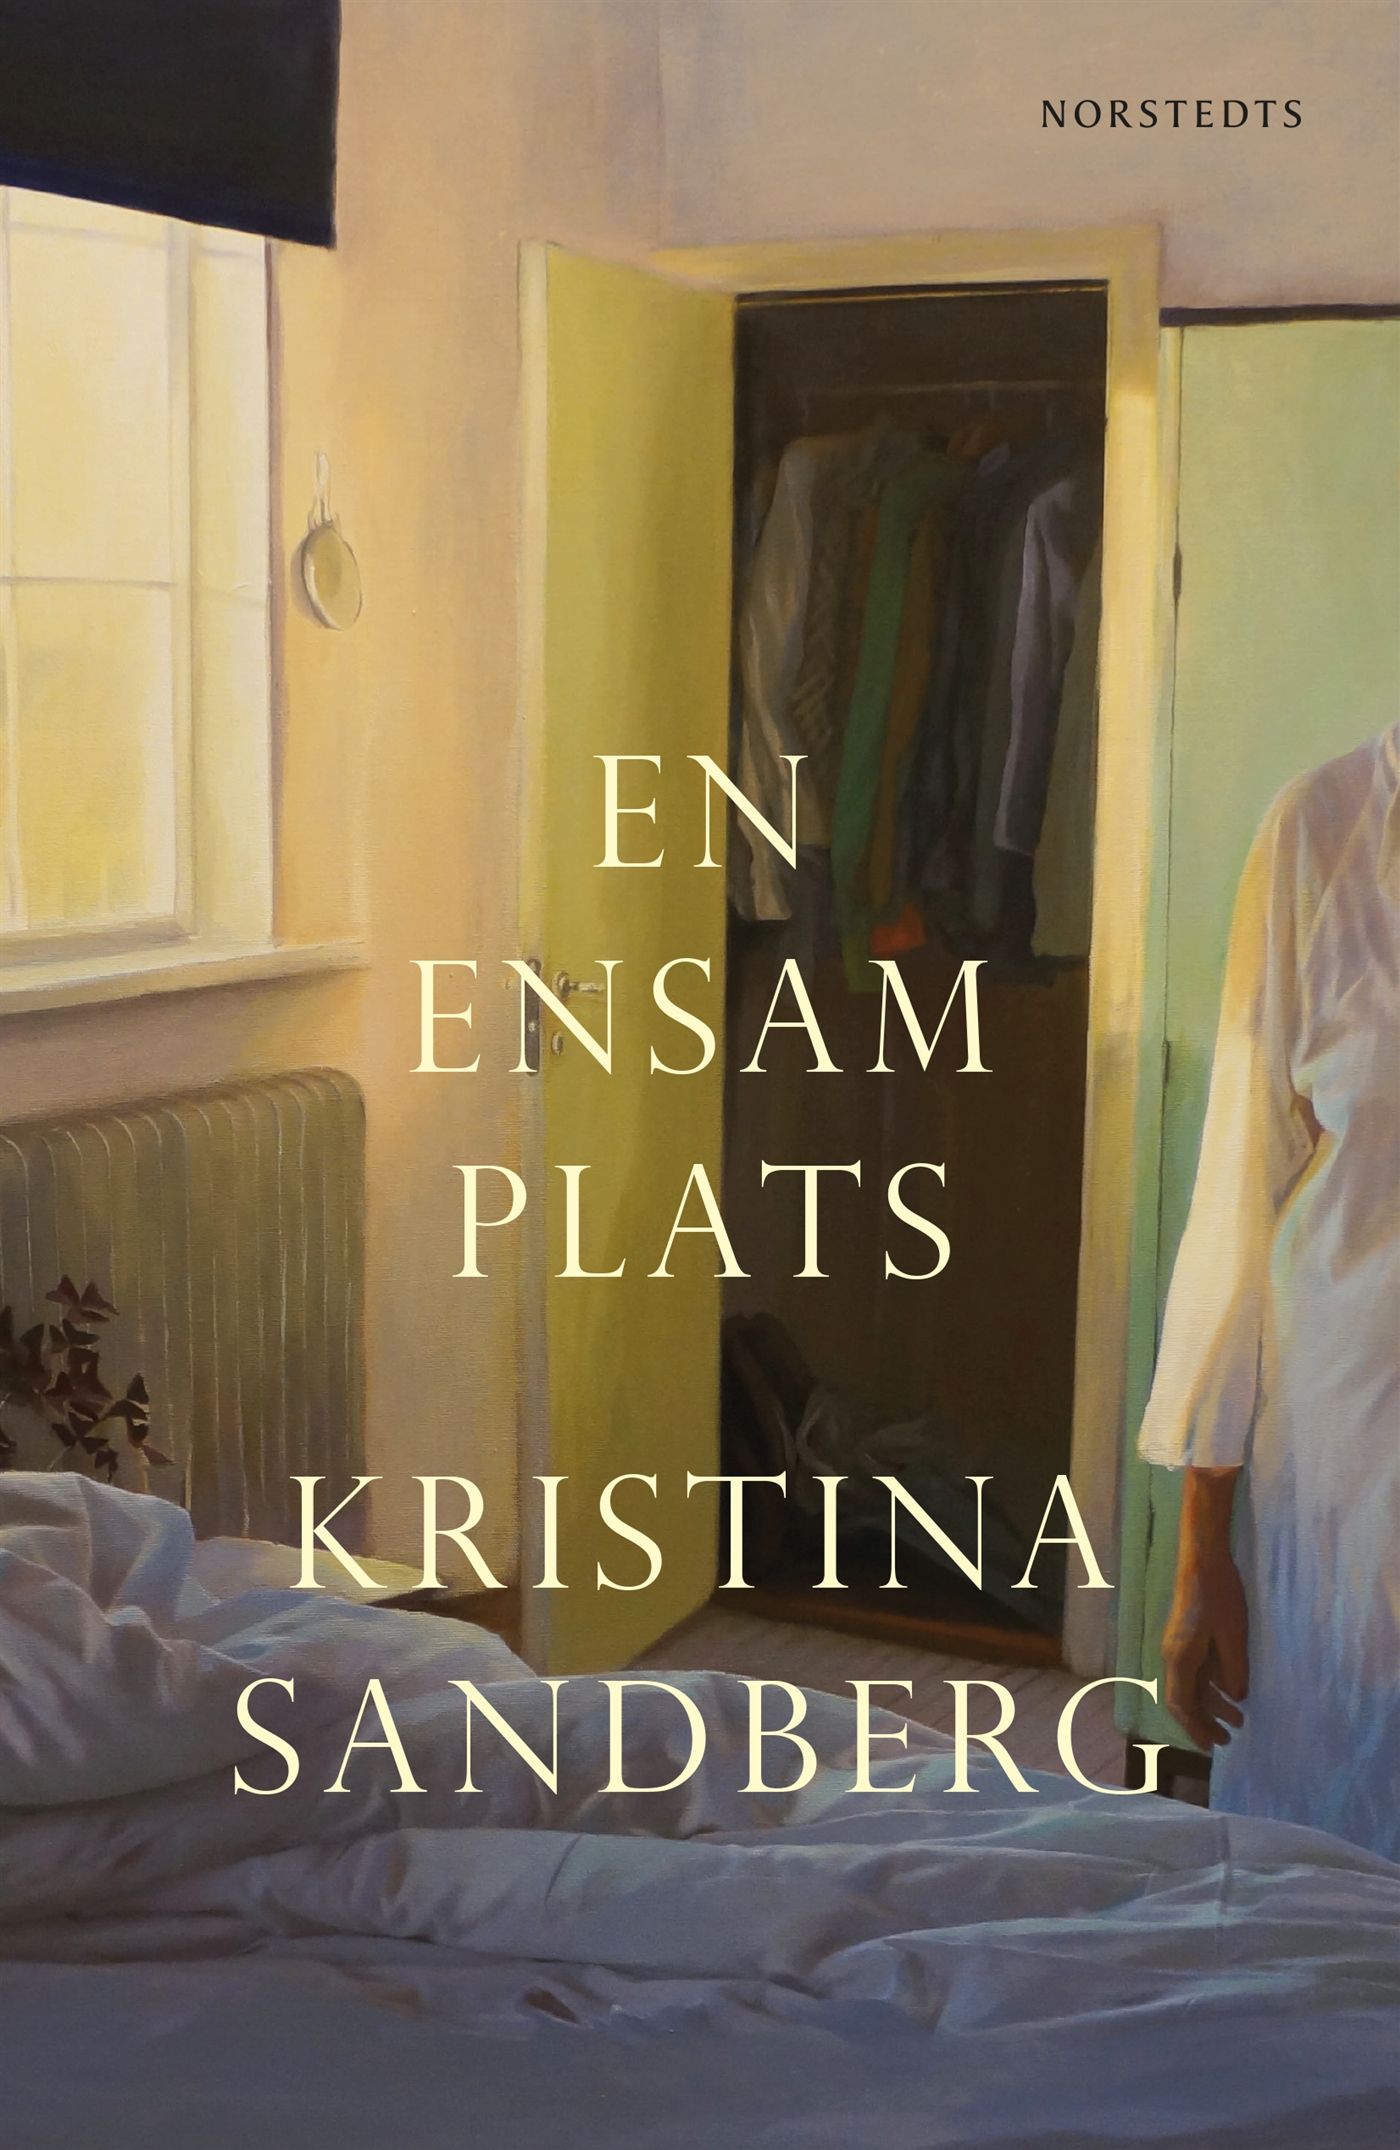 En ensam plats, e-bog af Kristina Sandberg